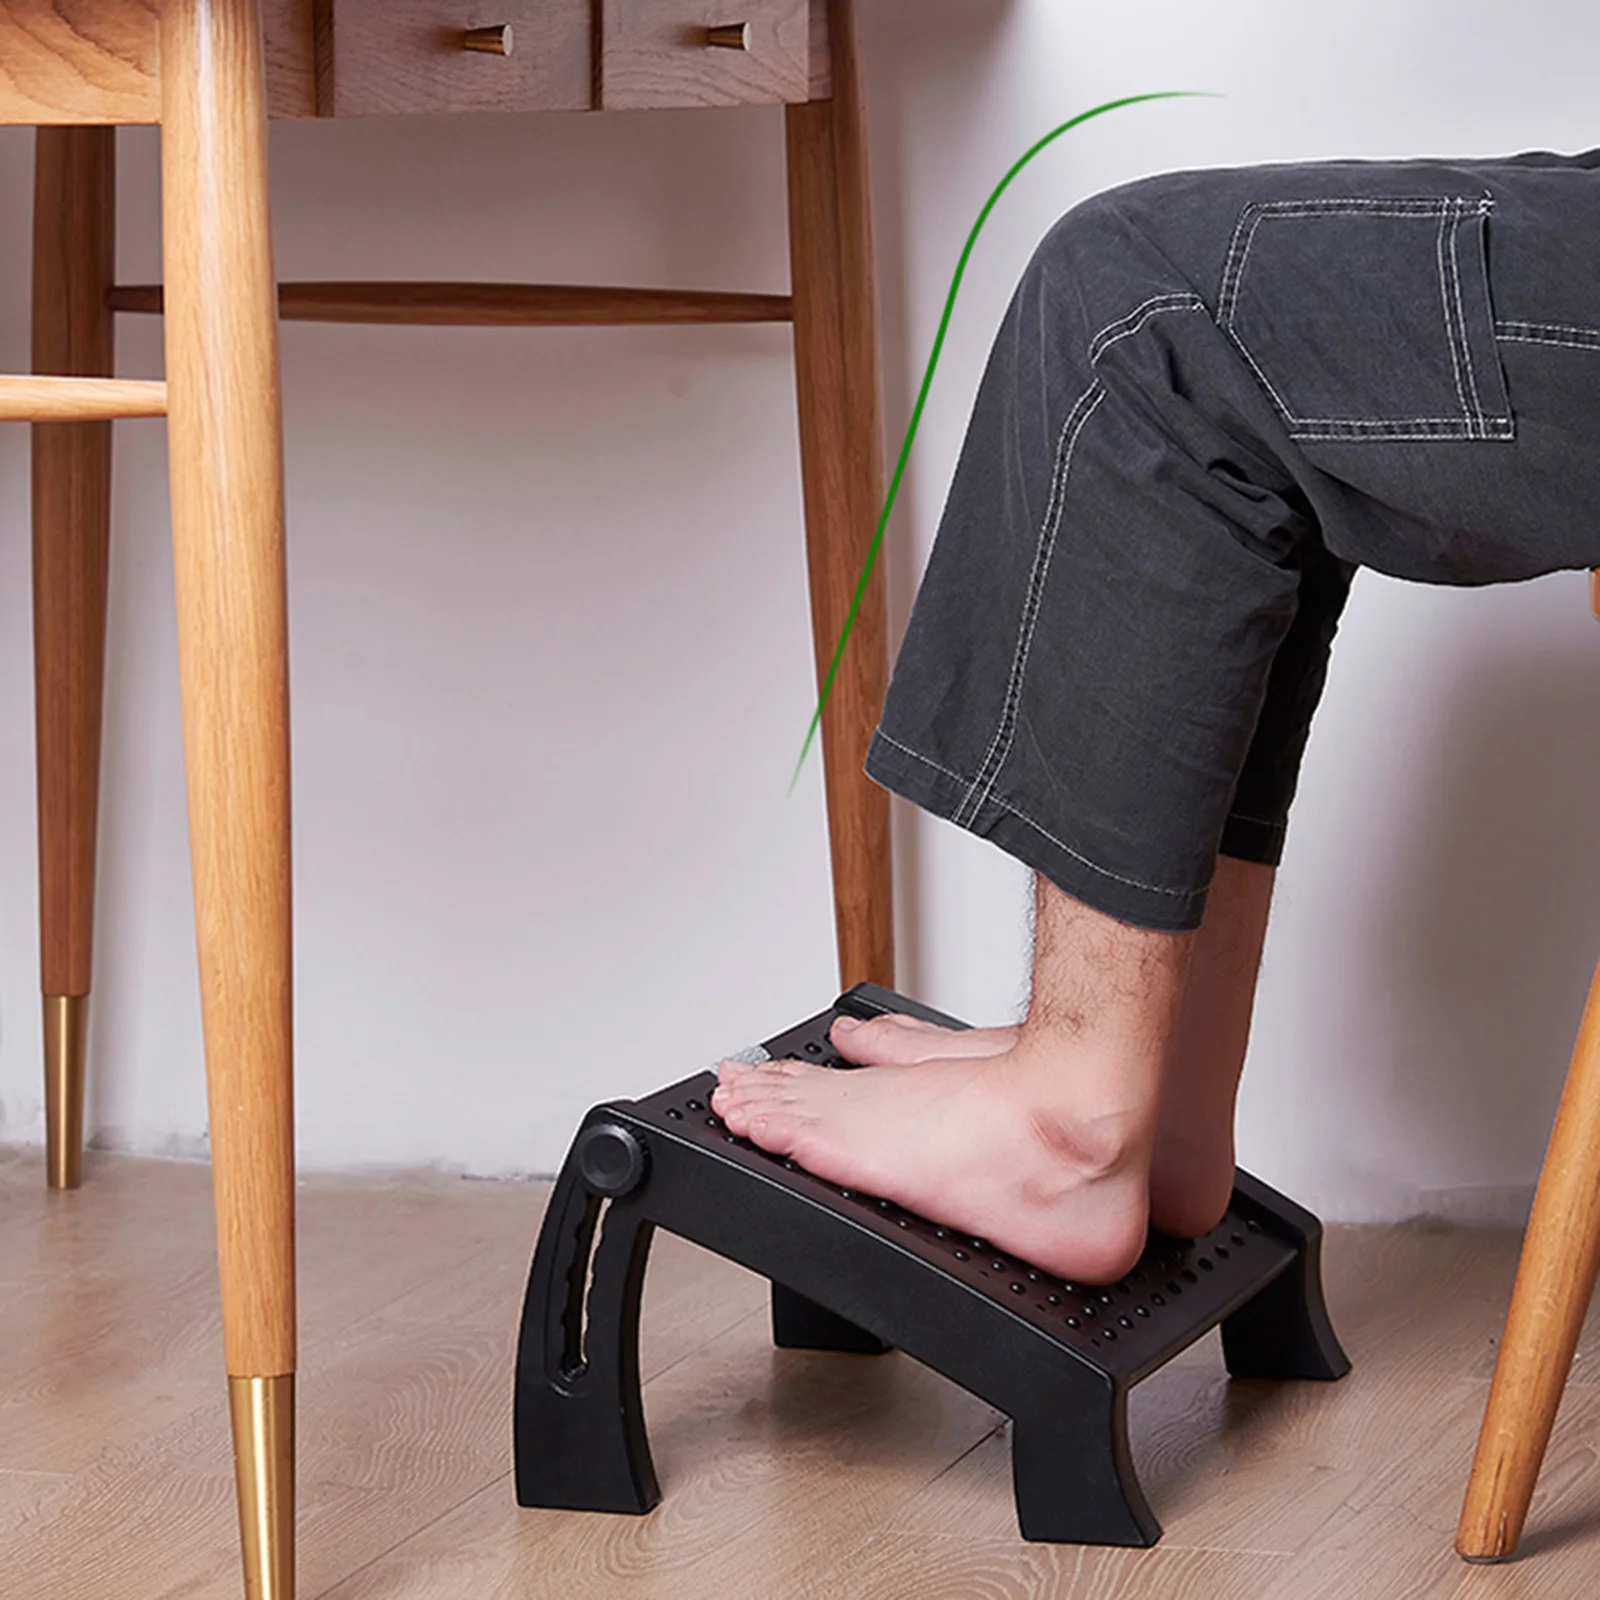 Footrest under The Desk at Work Height-adjustable Comfort for